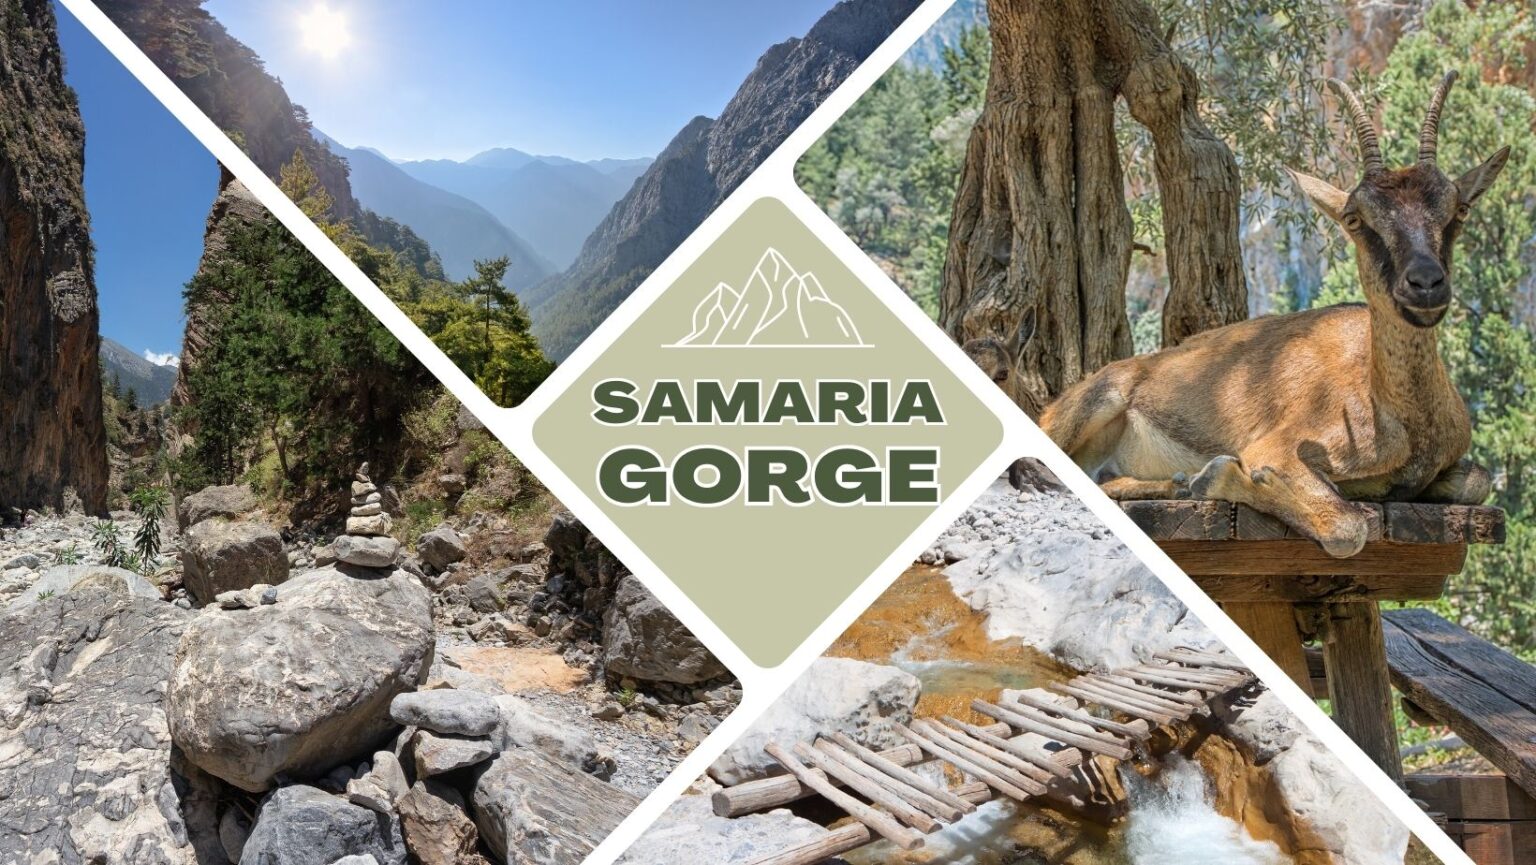 Saramaria gorge, Crete, the longest gorge in Europe